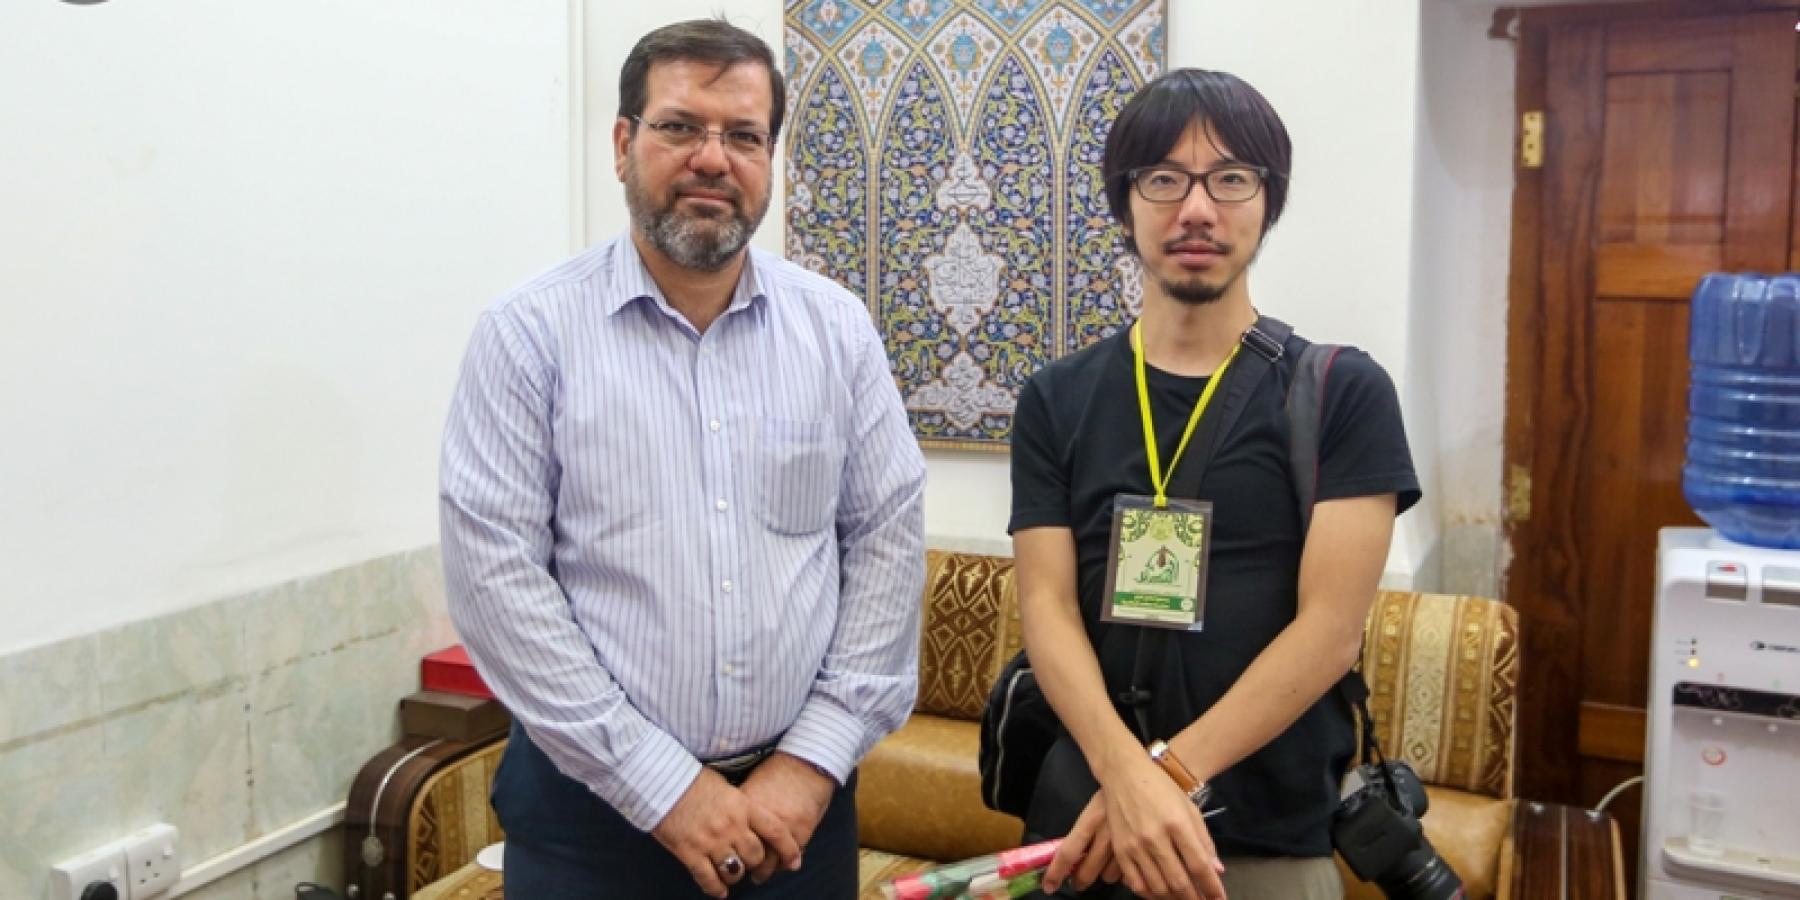 صحفي ياباني في الغدير الأغر: شخصية الإمام علي (ع) الانسانية ندرسها بمادة التاريخ العالمي بالأكاديمية اليابانية